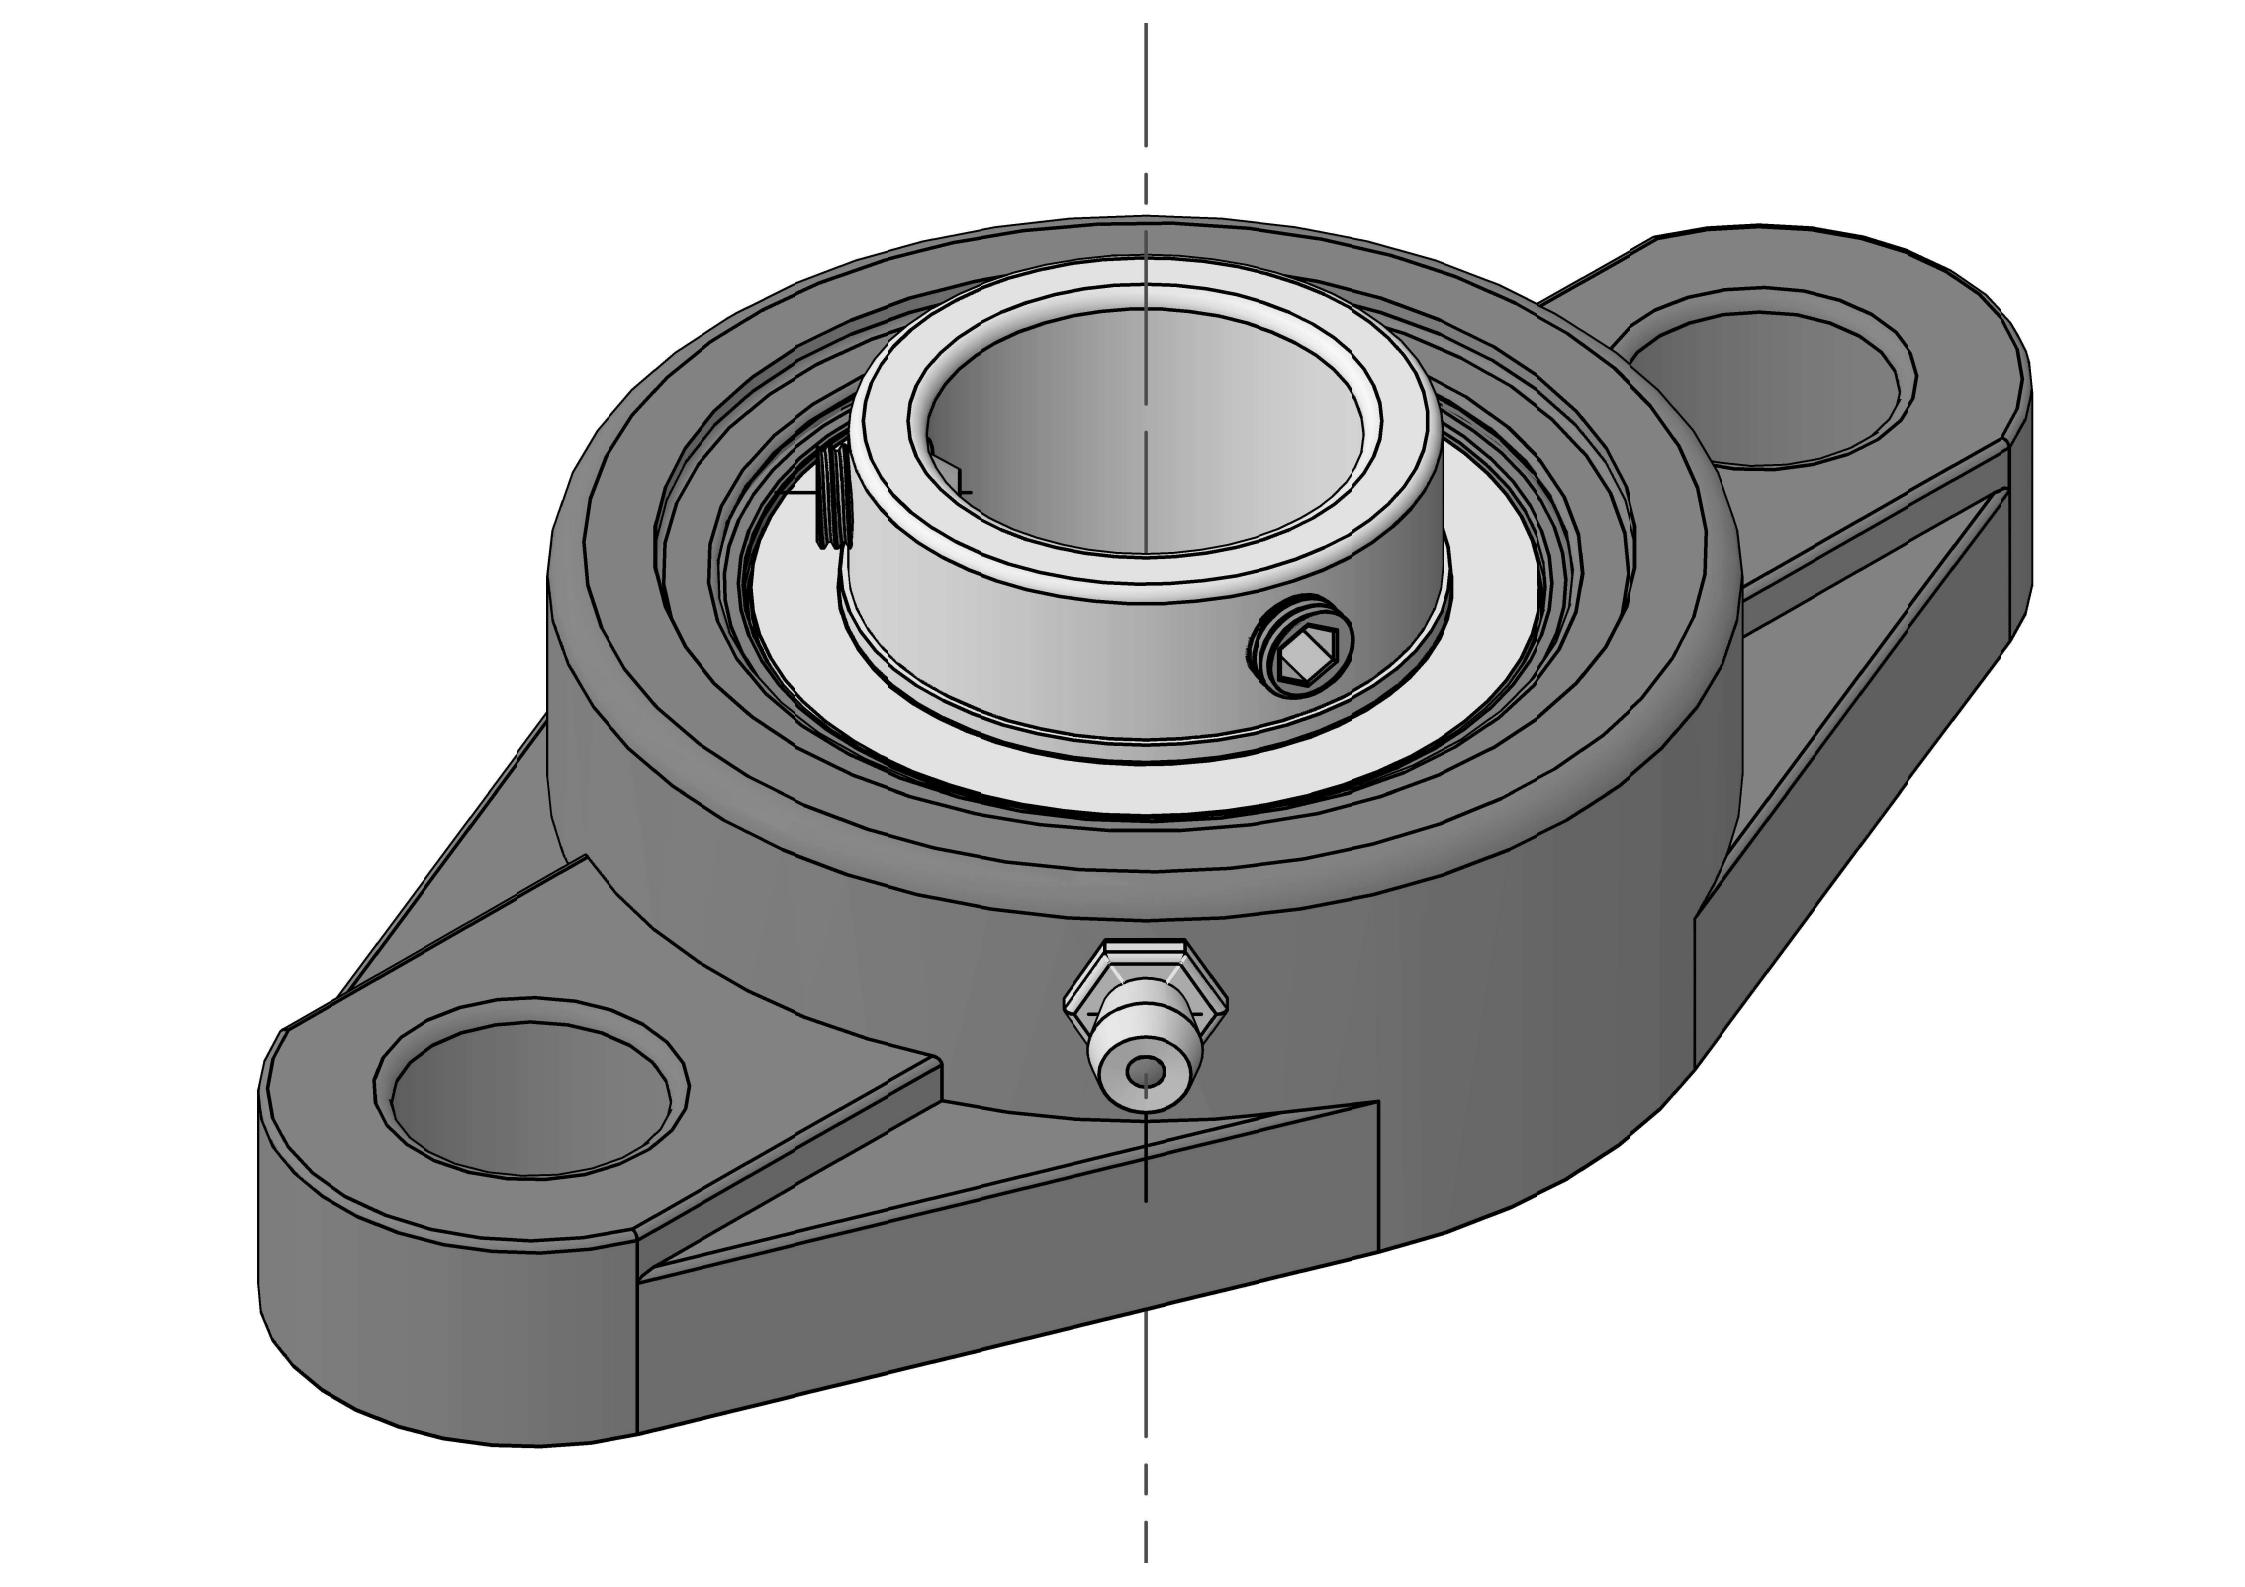 UCFLX08 40 mm teshikli ikkita murvatli oval gardishli podshipniklar